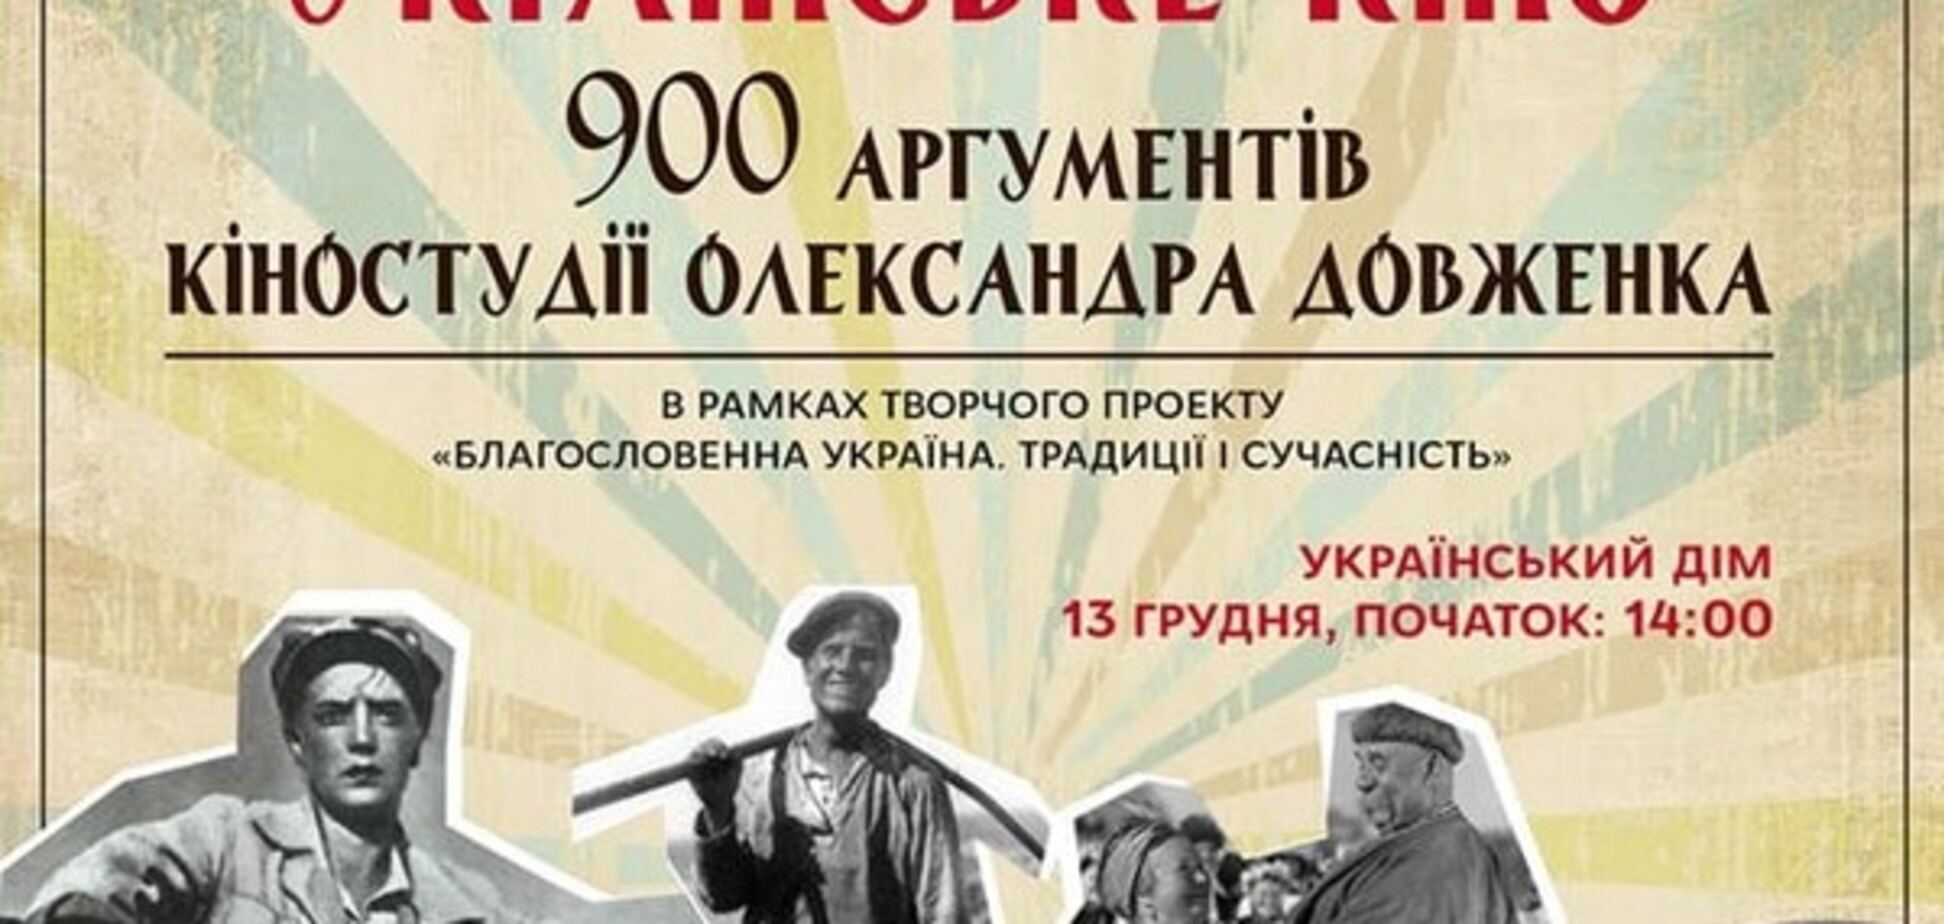 13 декабря состоится киноконцерт 'Украинское кино. 900 аргументов Киностудии Александра Довженко'